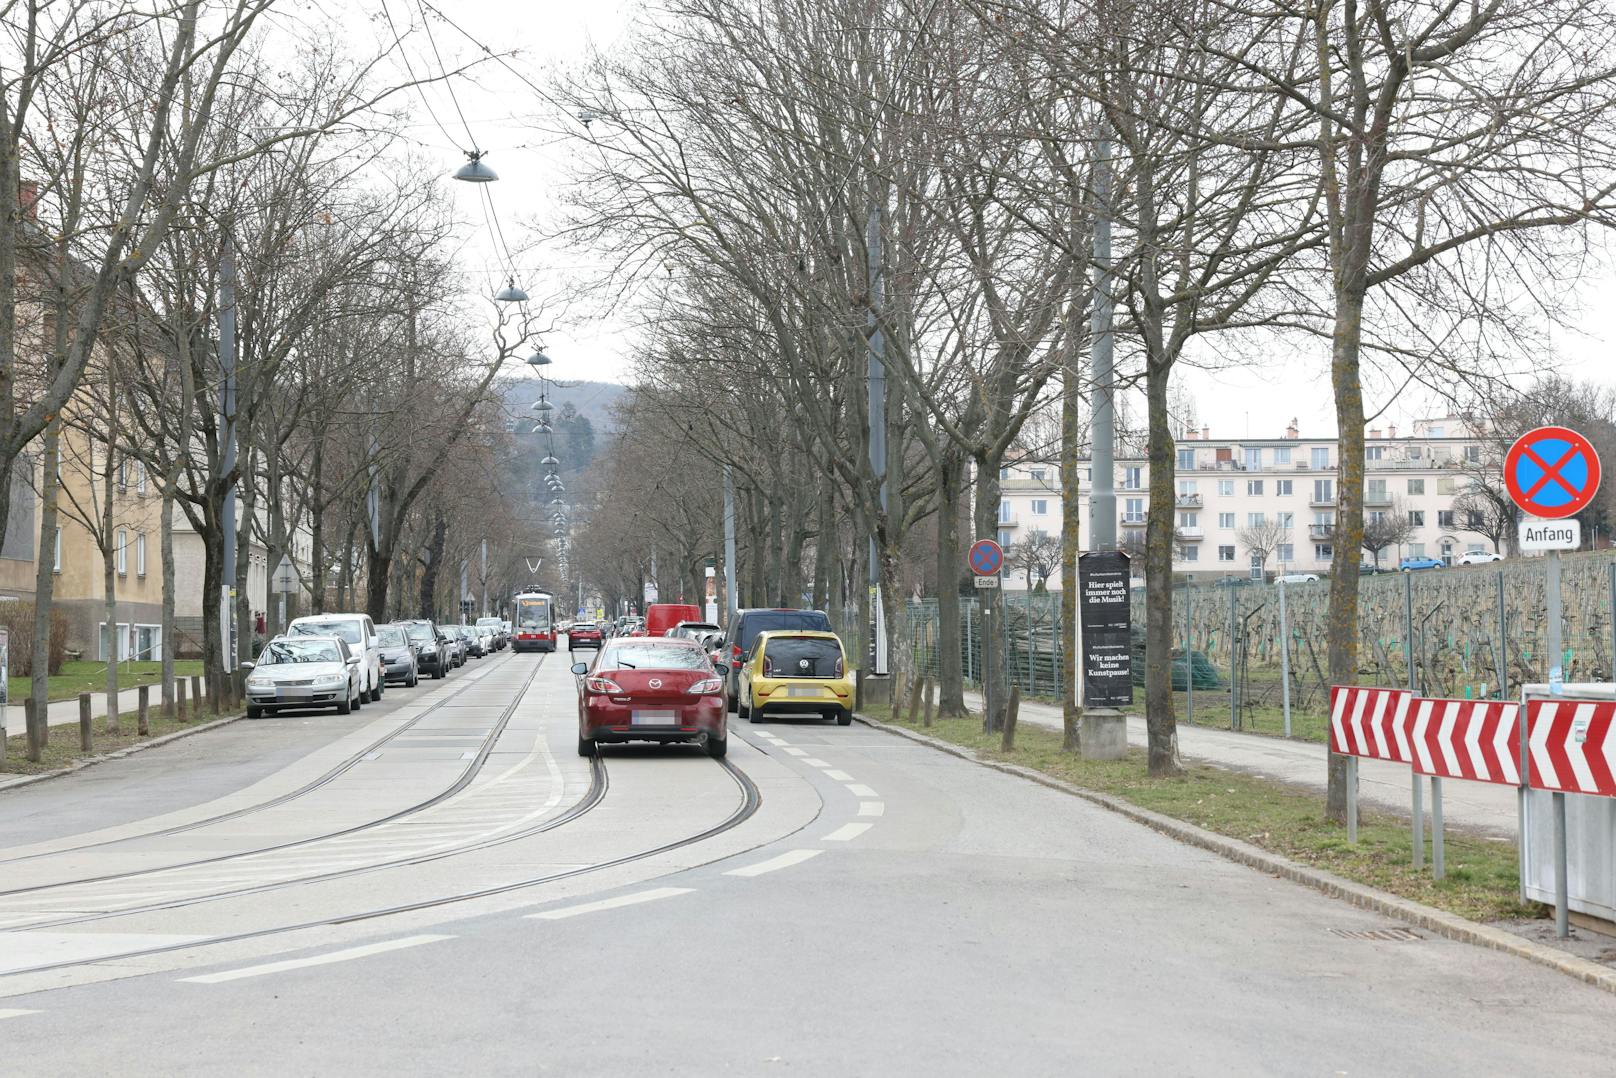 Stadtauswärts soll der neue Radstreifen errichtet werden.